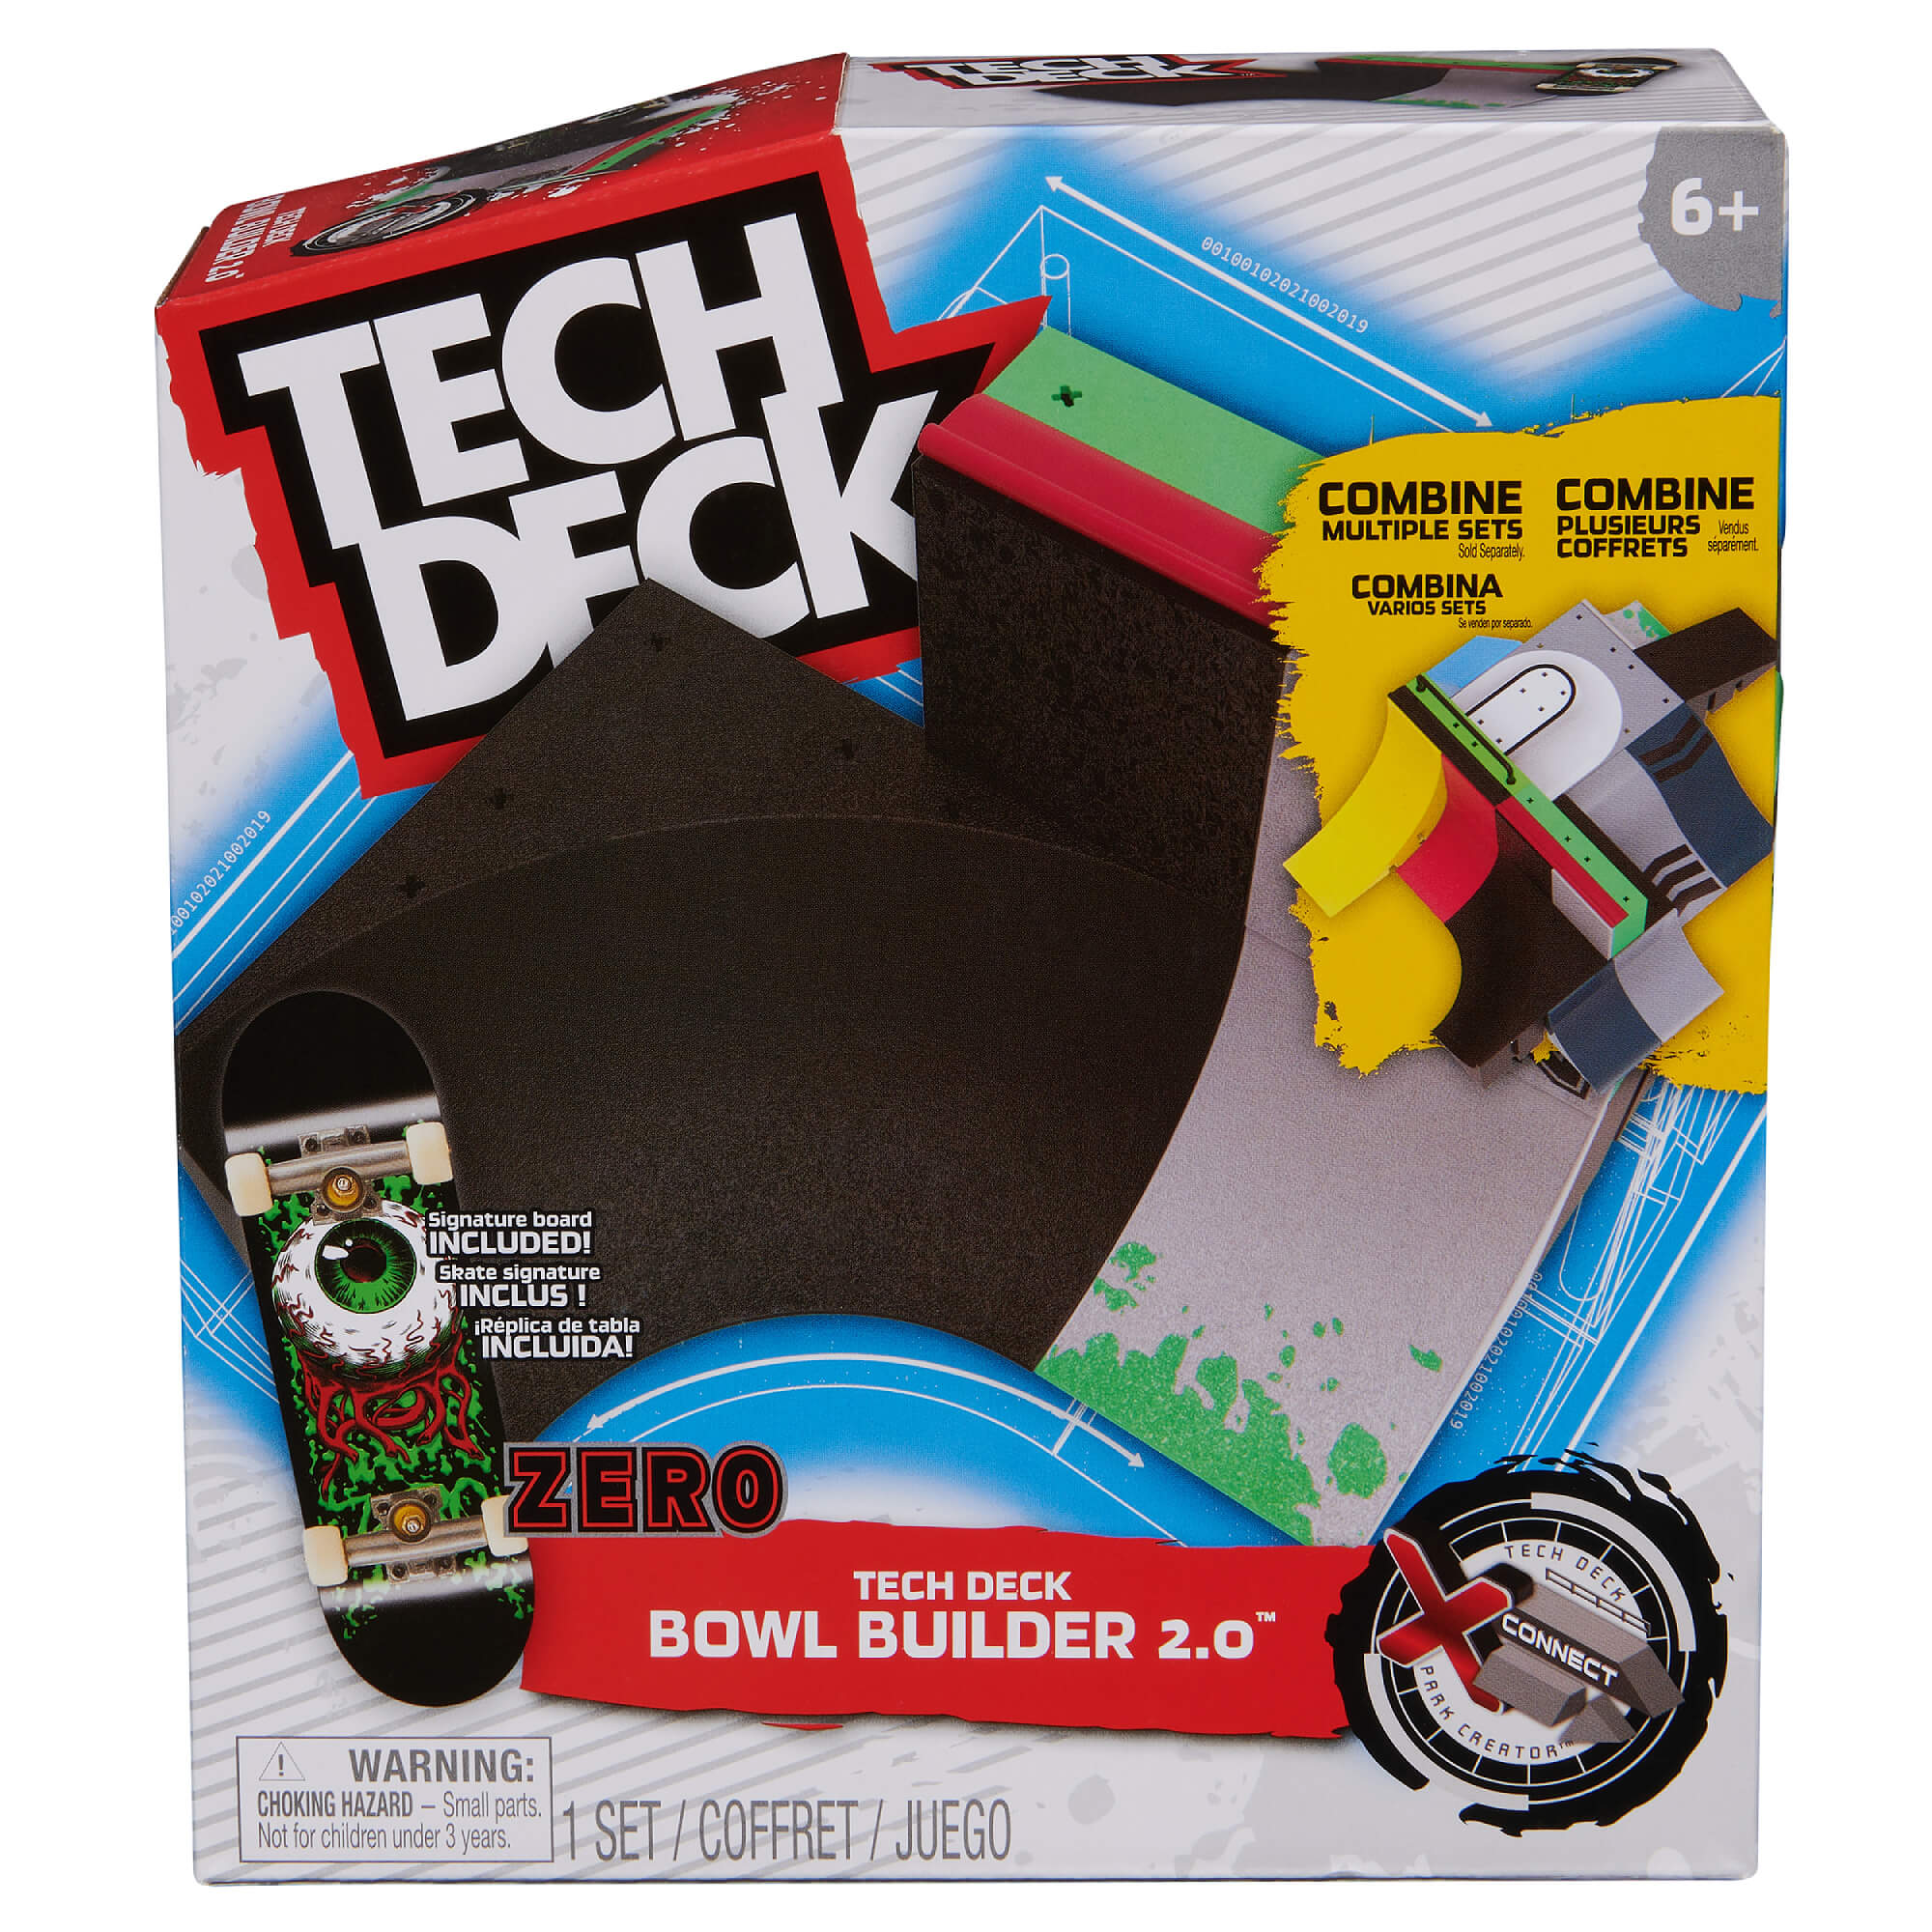 Tech Deck Fingerboard Bowl Builder 2.0